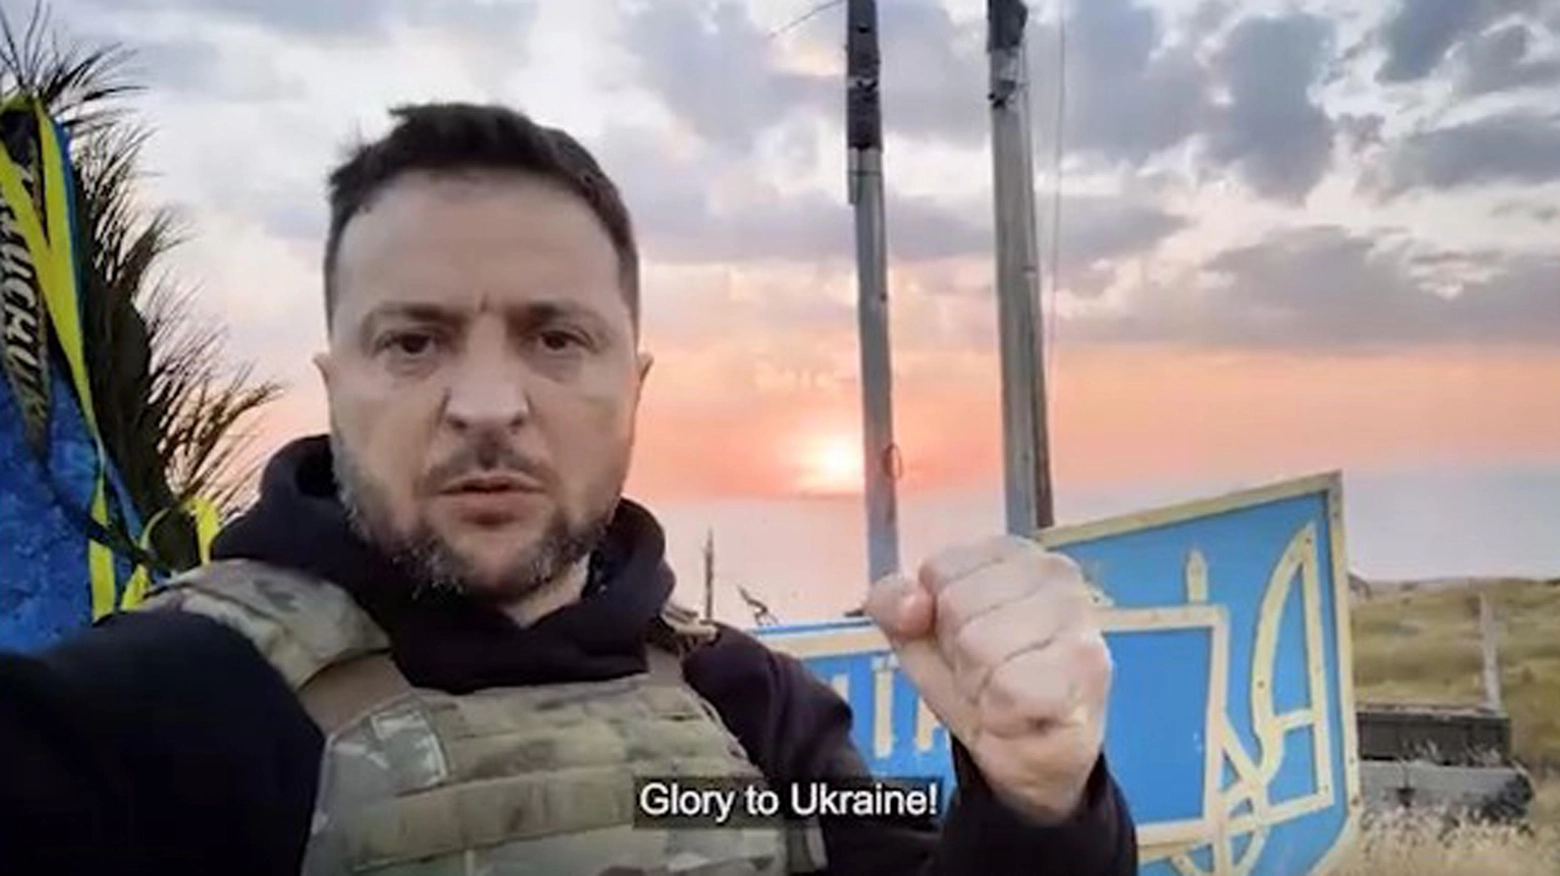 Isola strategica nel Mar Nero, e nel cuore del popolo ucraino per l’eroica resistenza di 13 guardie di frontiera all’incrociatore Moskva